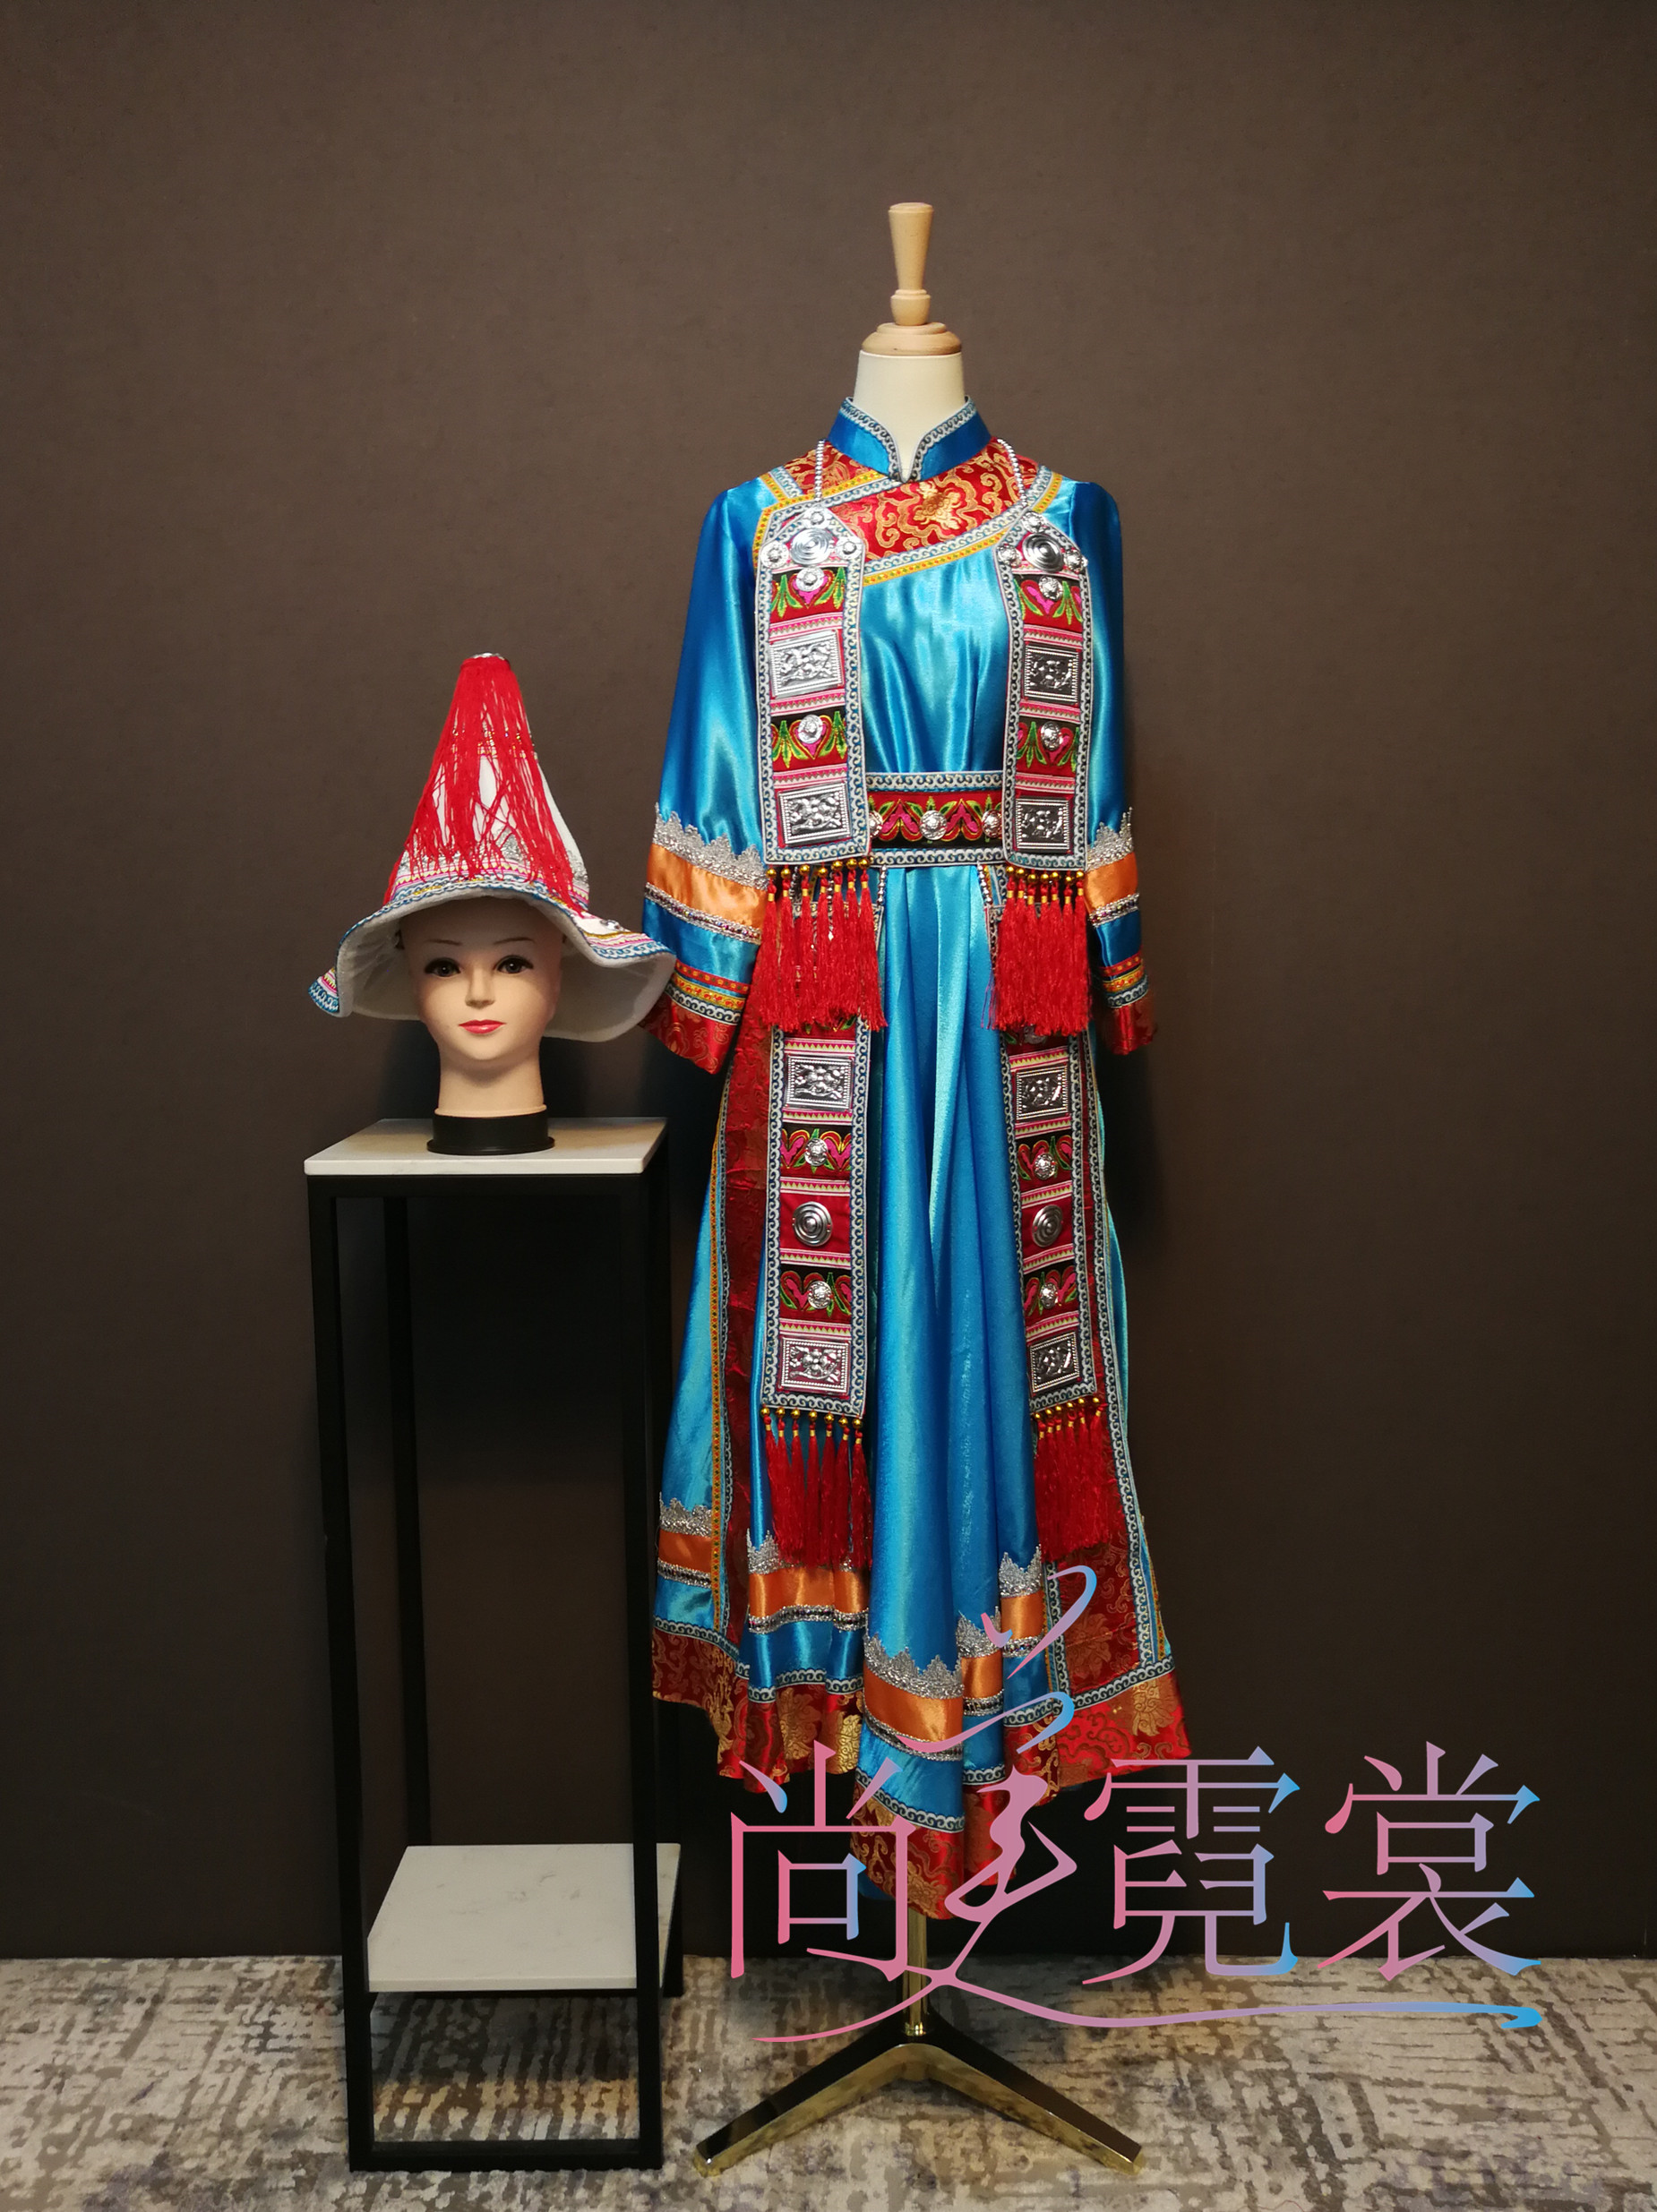 新款裕固族少数民族盛装云南贵州民族传统服饰北京定制出租赁